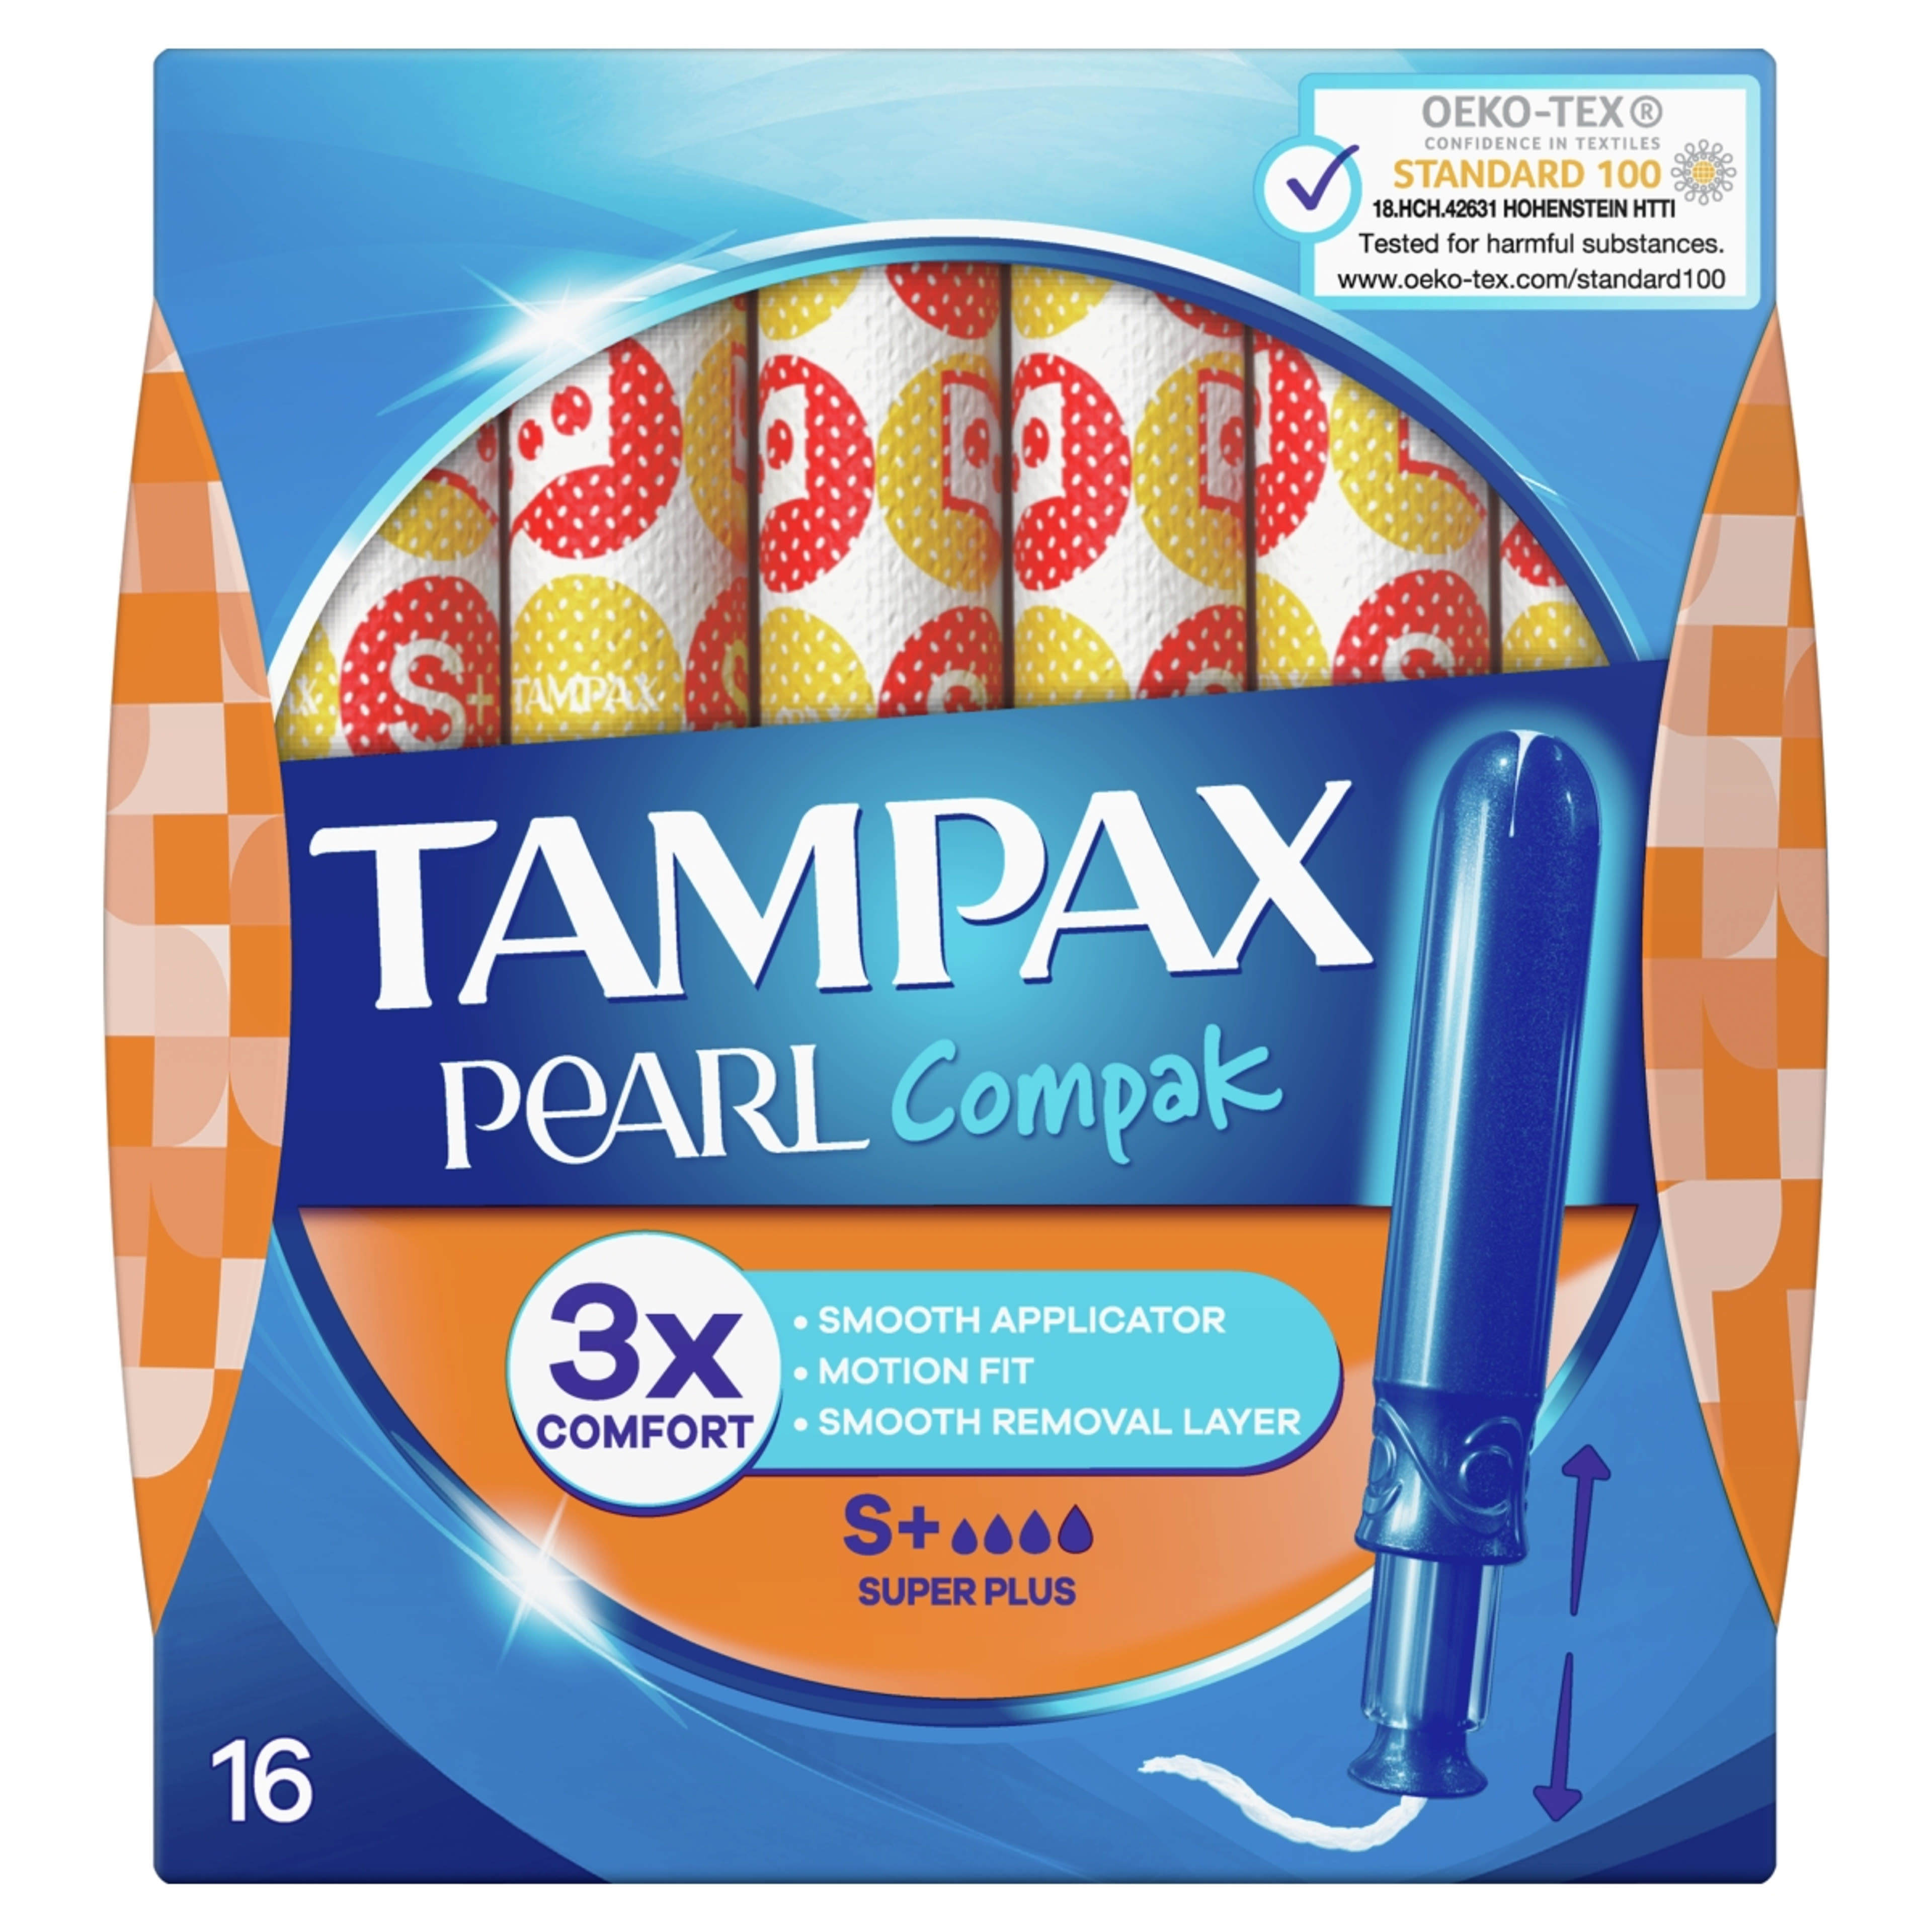 Tampax tampon compak pearl super plus - 16 db